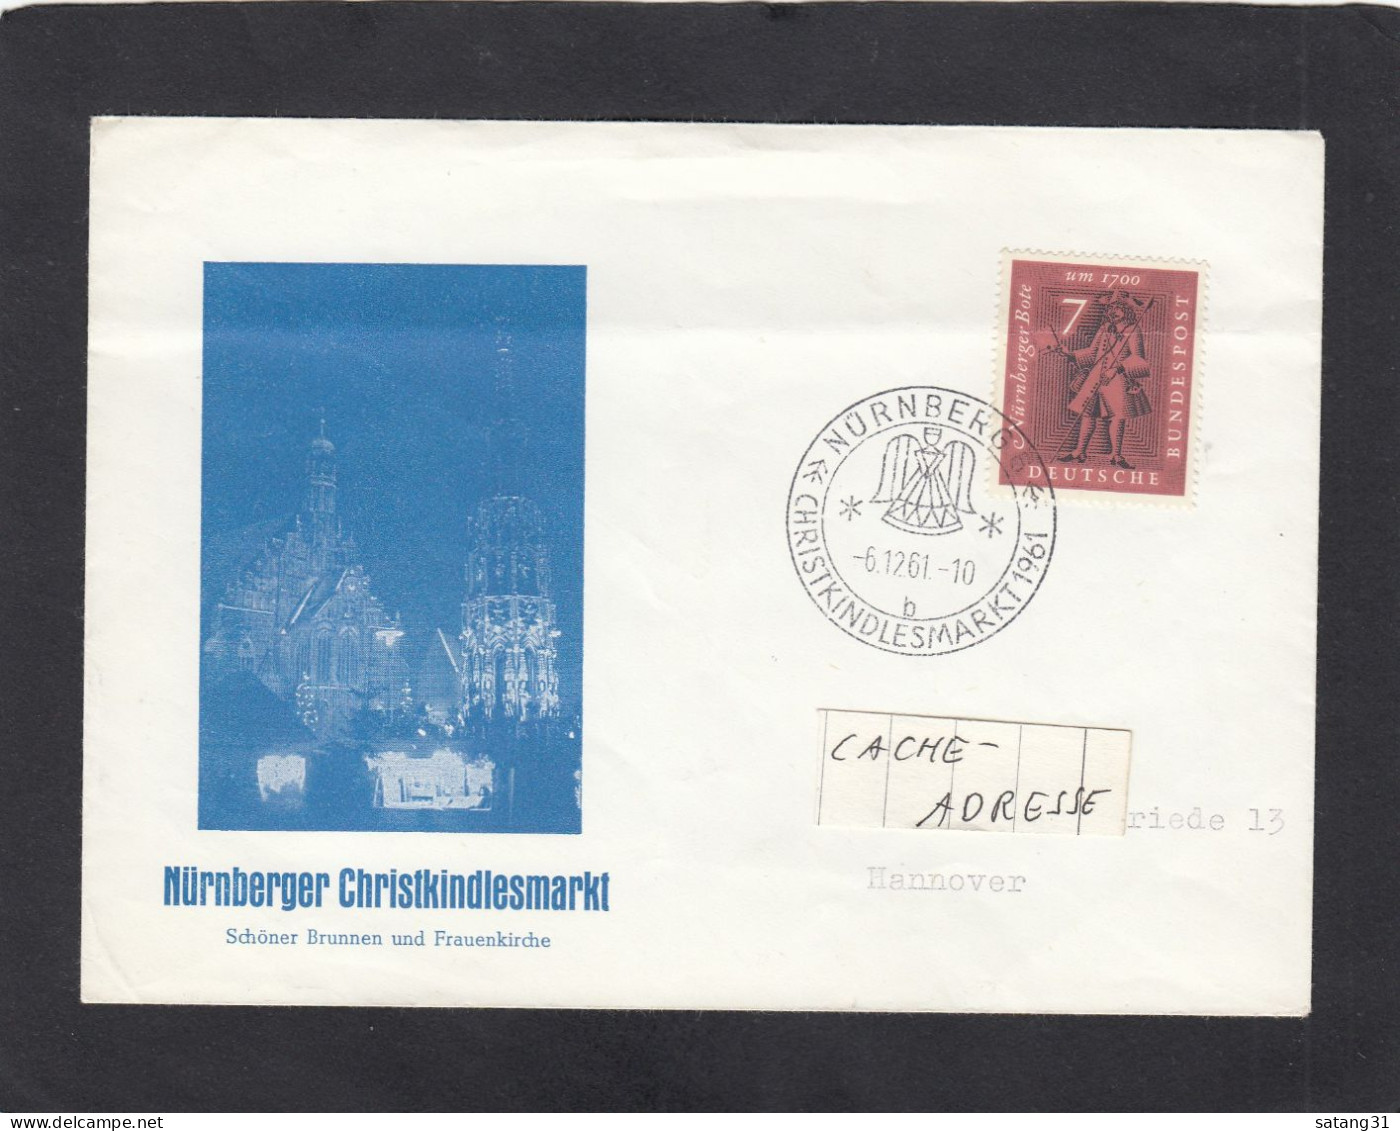 NÜRNBERGER CHRISTKINDLESMARKT 1961. - Covers & Documents